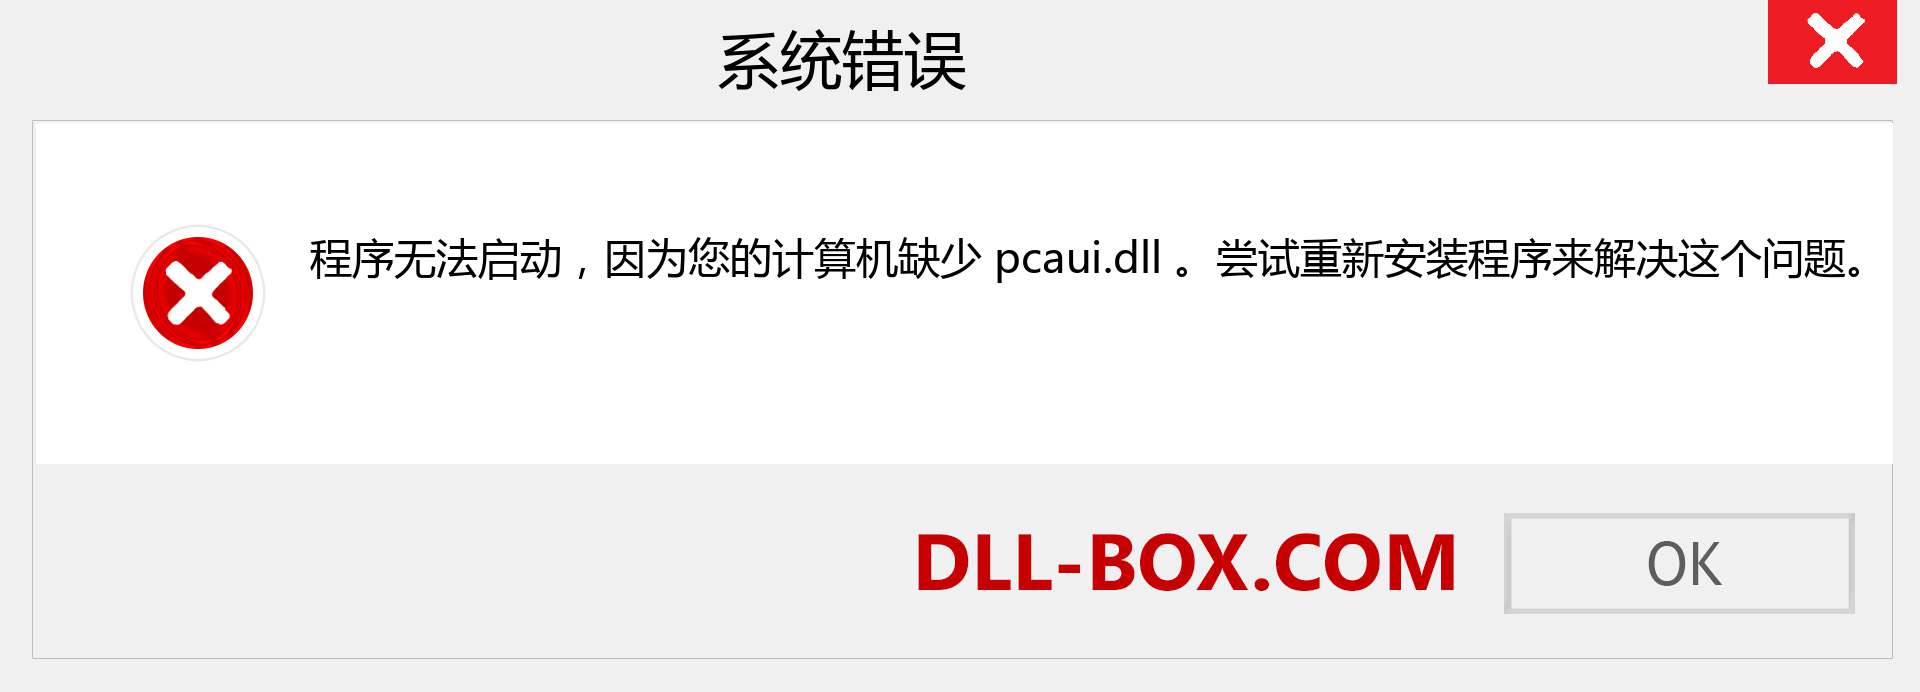 pcaui.dll 文件丢失？。 适用于 Windows 7、8、10 的下载 - 修复 Windows、照片、图像上的 pcaui dll 丢失错误